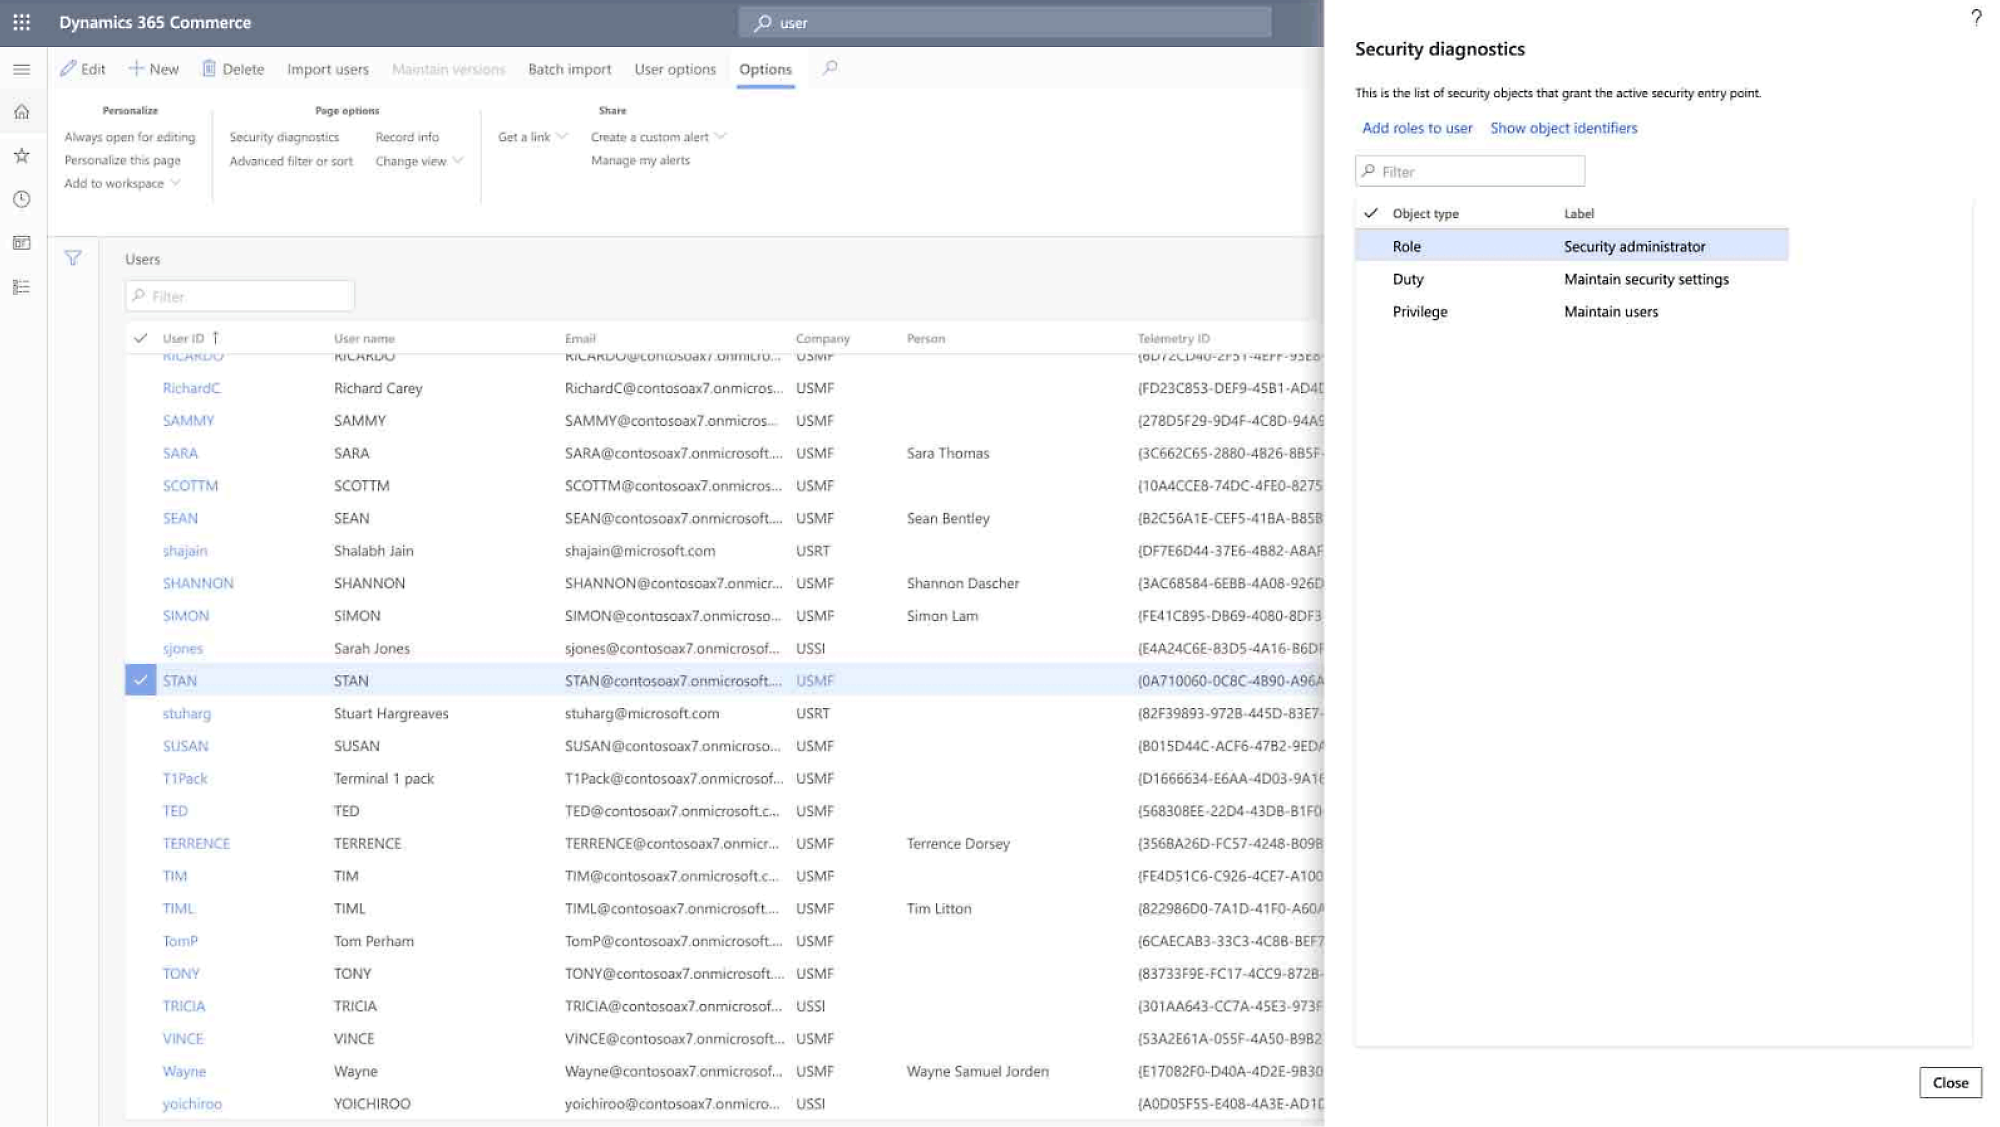 Recorte de pantalla de la administración de usuarios de Dynamics 365 Commerce, que muestra los usuarios, las direcciones de correo electrónico, los roles y la configuración de seguridad